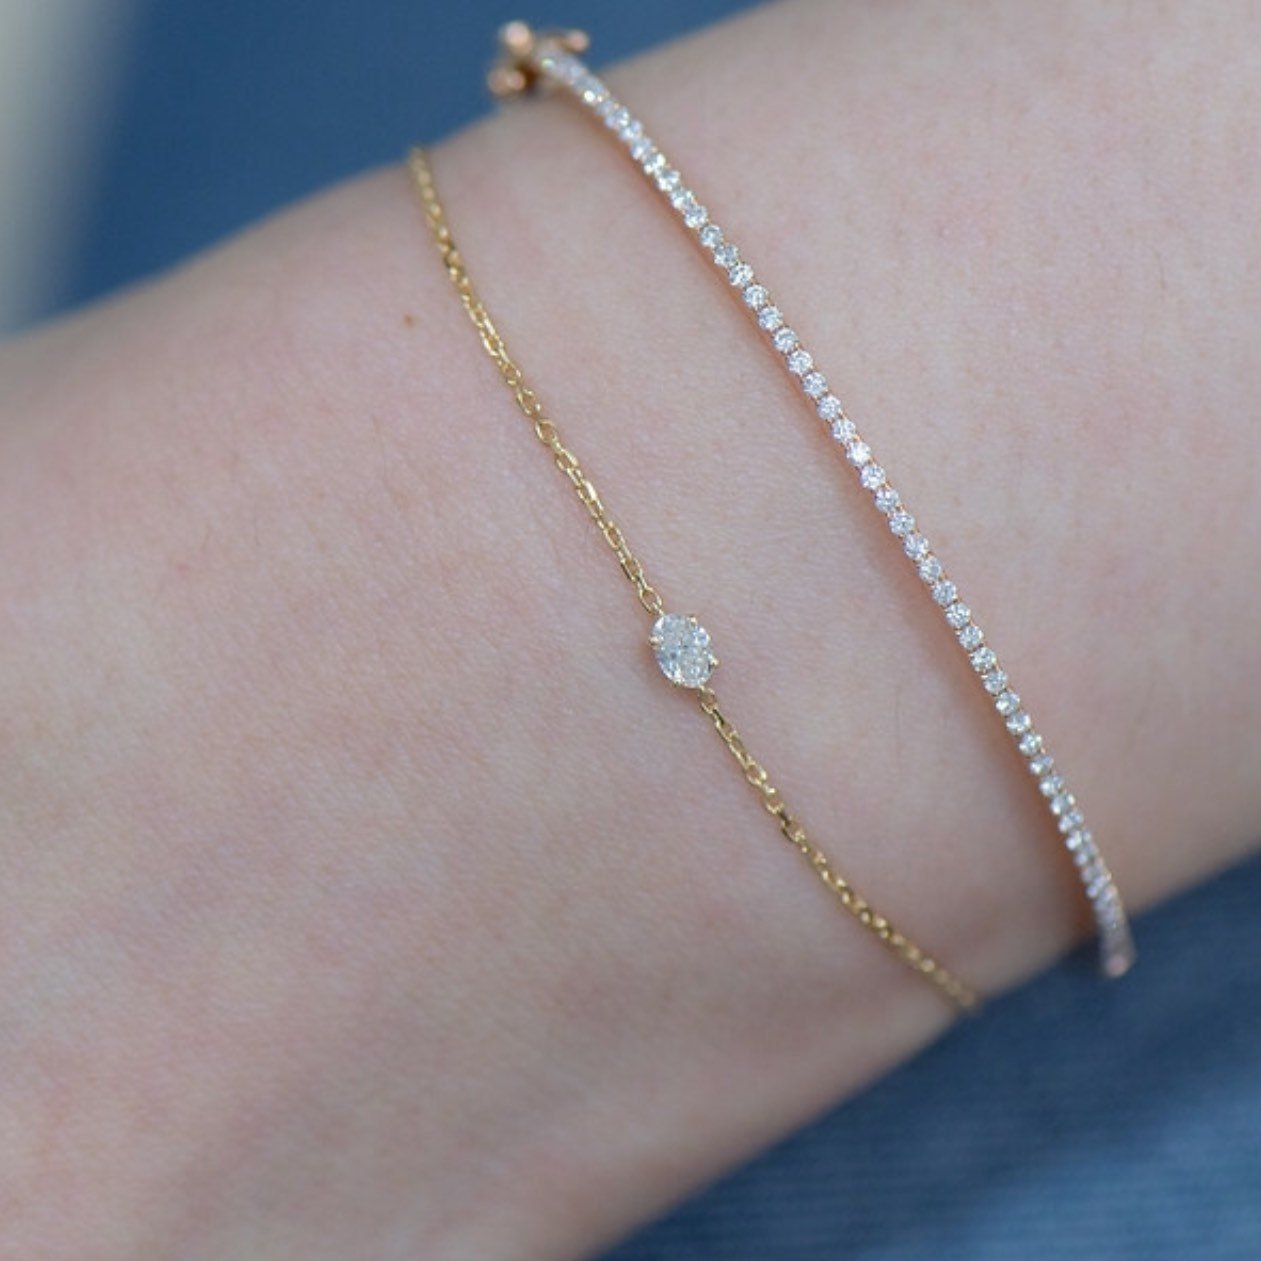 Diamond Bracelet, Solitaire Diamond Bracelet, 14k 18k Solid Gold Diamond  Bracelet, Simple Anniversary Gift Bracelet, Gift for Her - Etsy